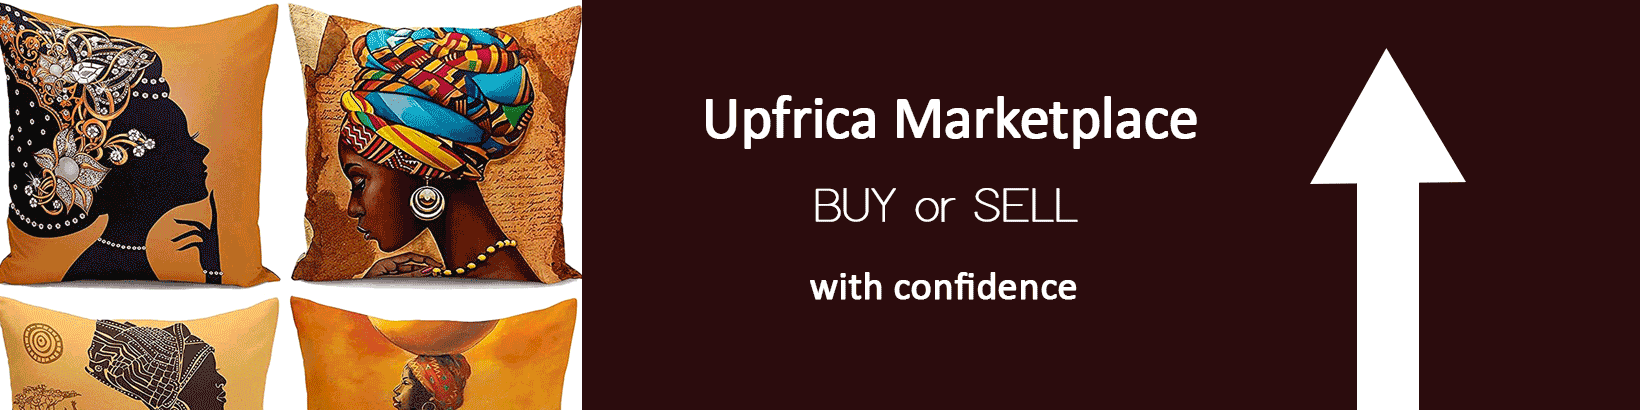 Upfrica MarketPlace